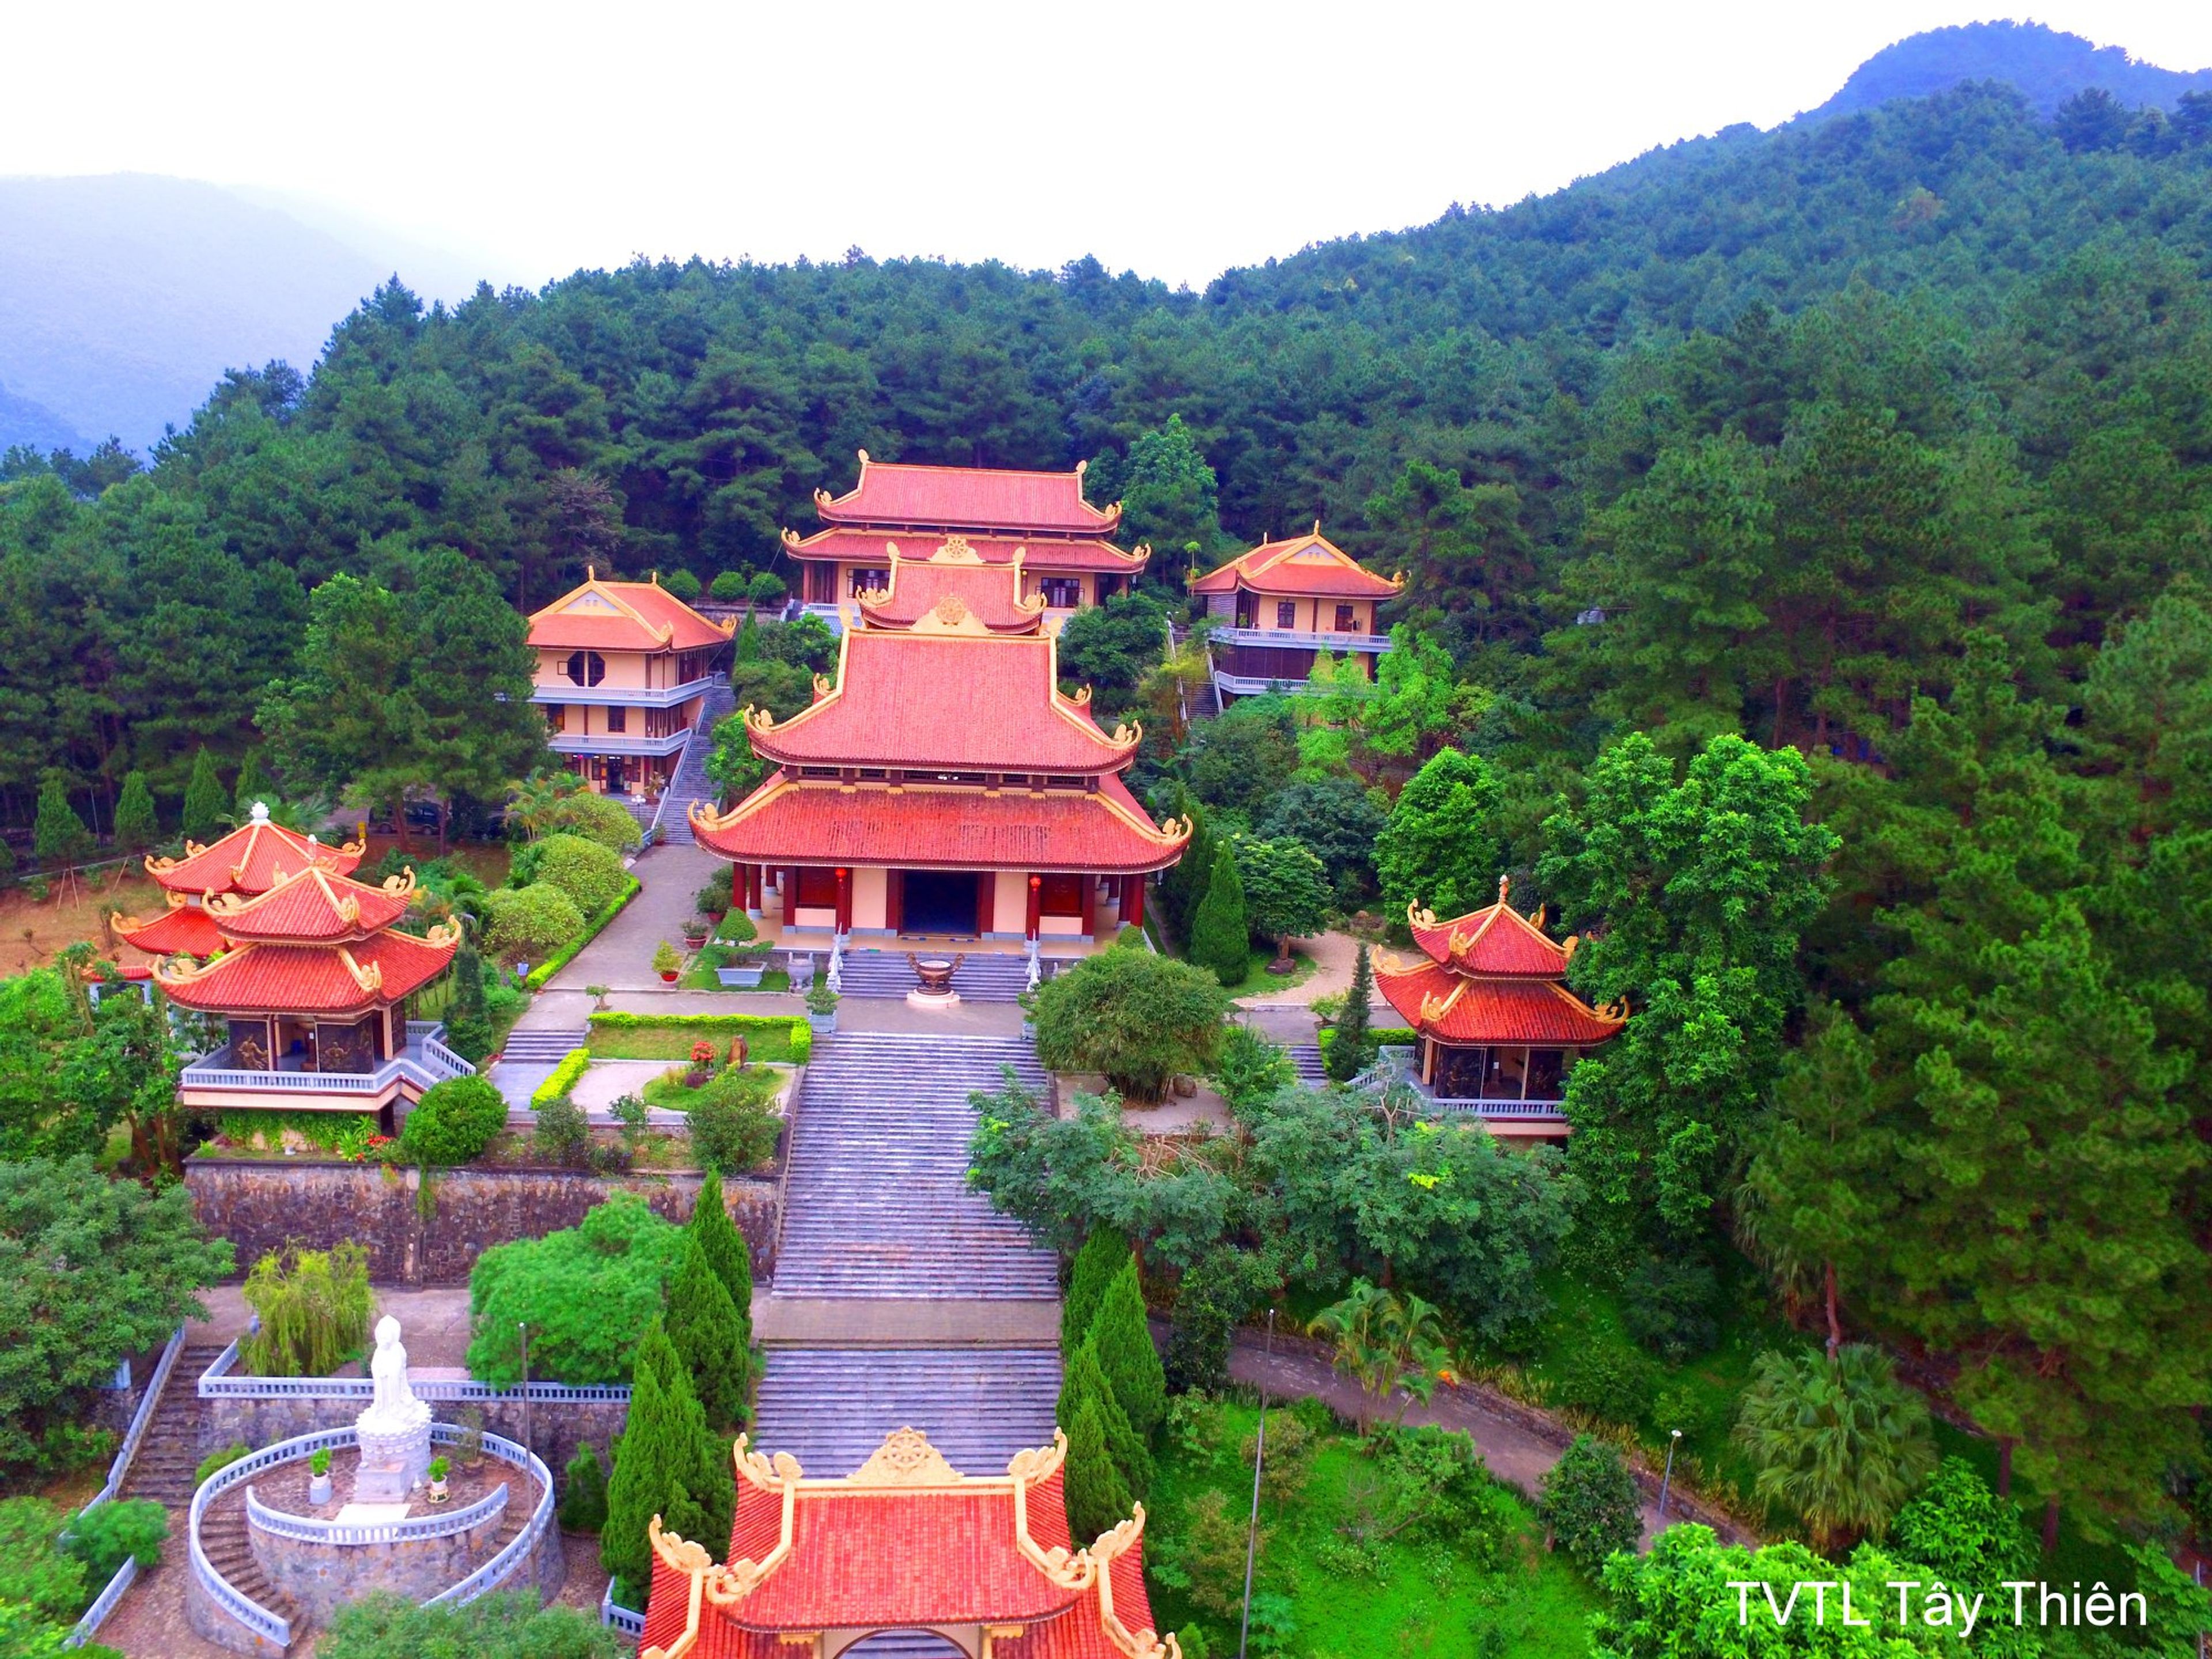 du lịch vãng cảnh Thiền Viện Trúc Lâm, du lịch Tỉnh Vĩnh Phúc, chùa Tây Thiên